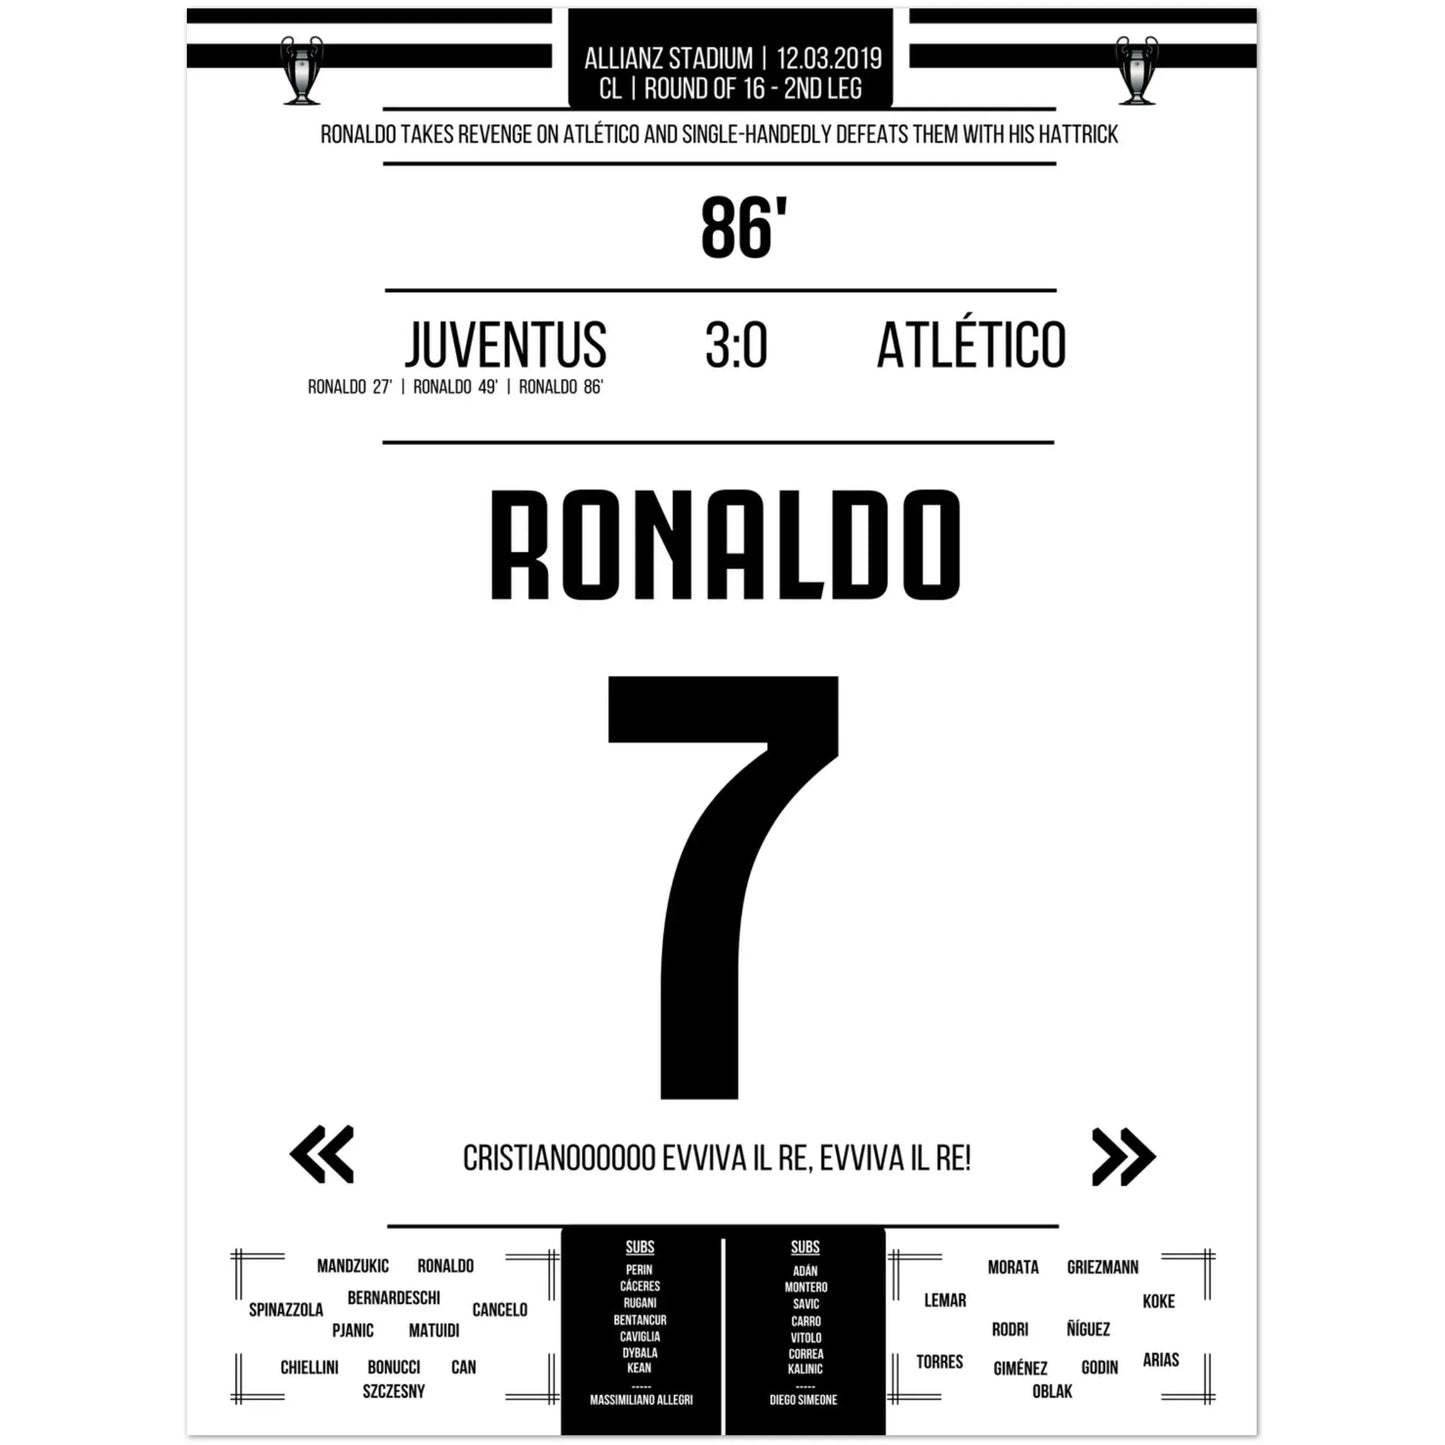 La revanche de Ronaldo contre l'Atlético en huitièmes de finale retour de la Ligue des champions 2019